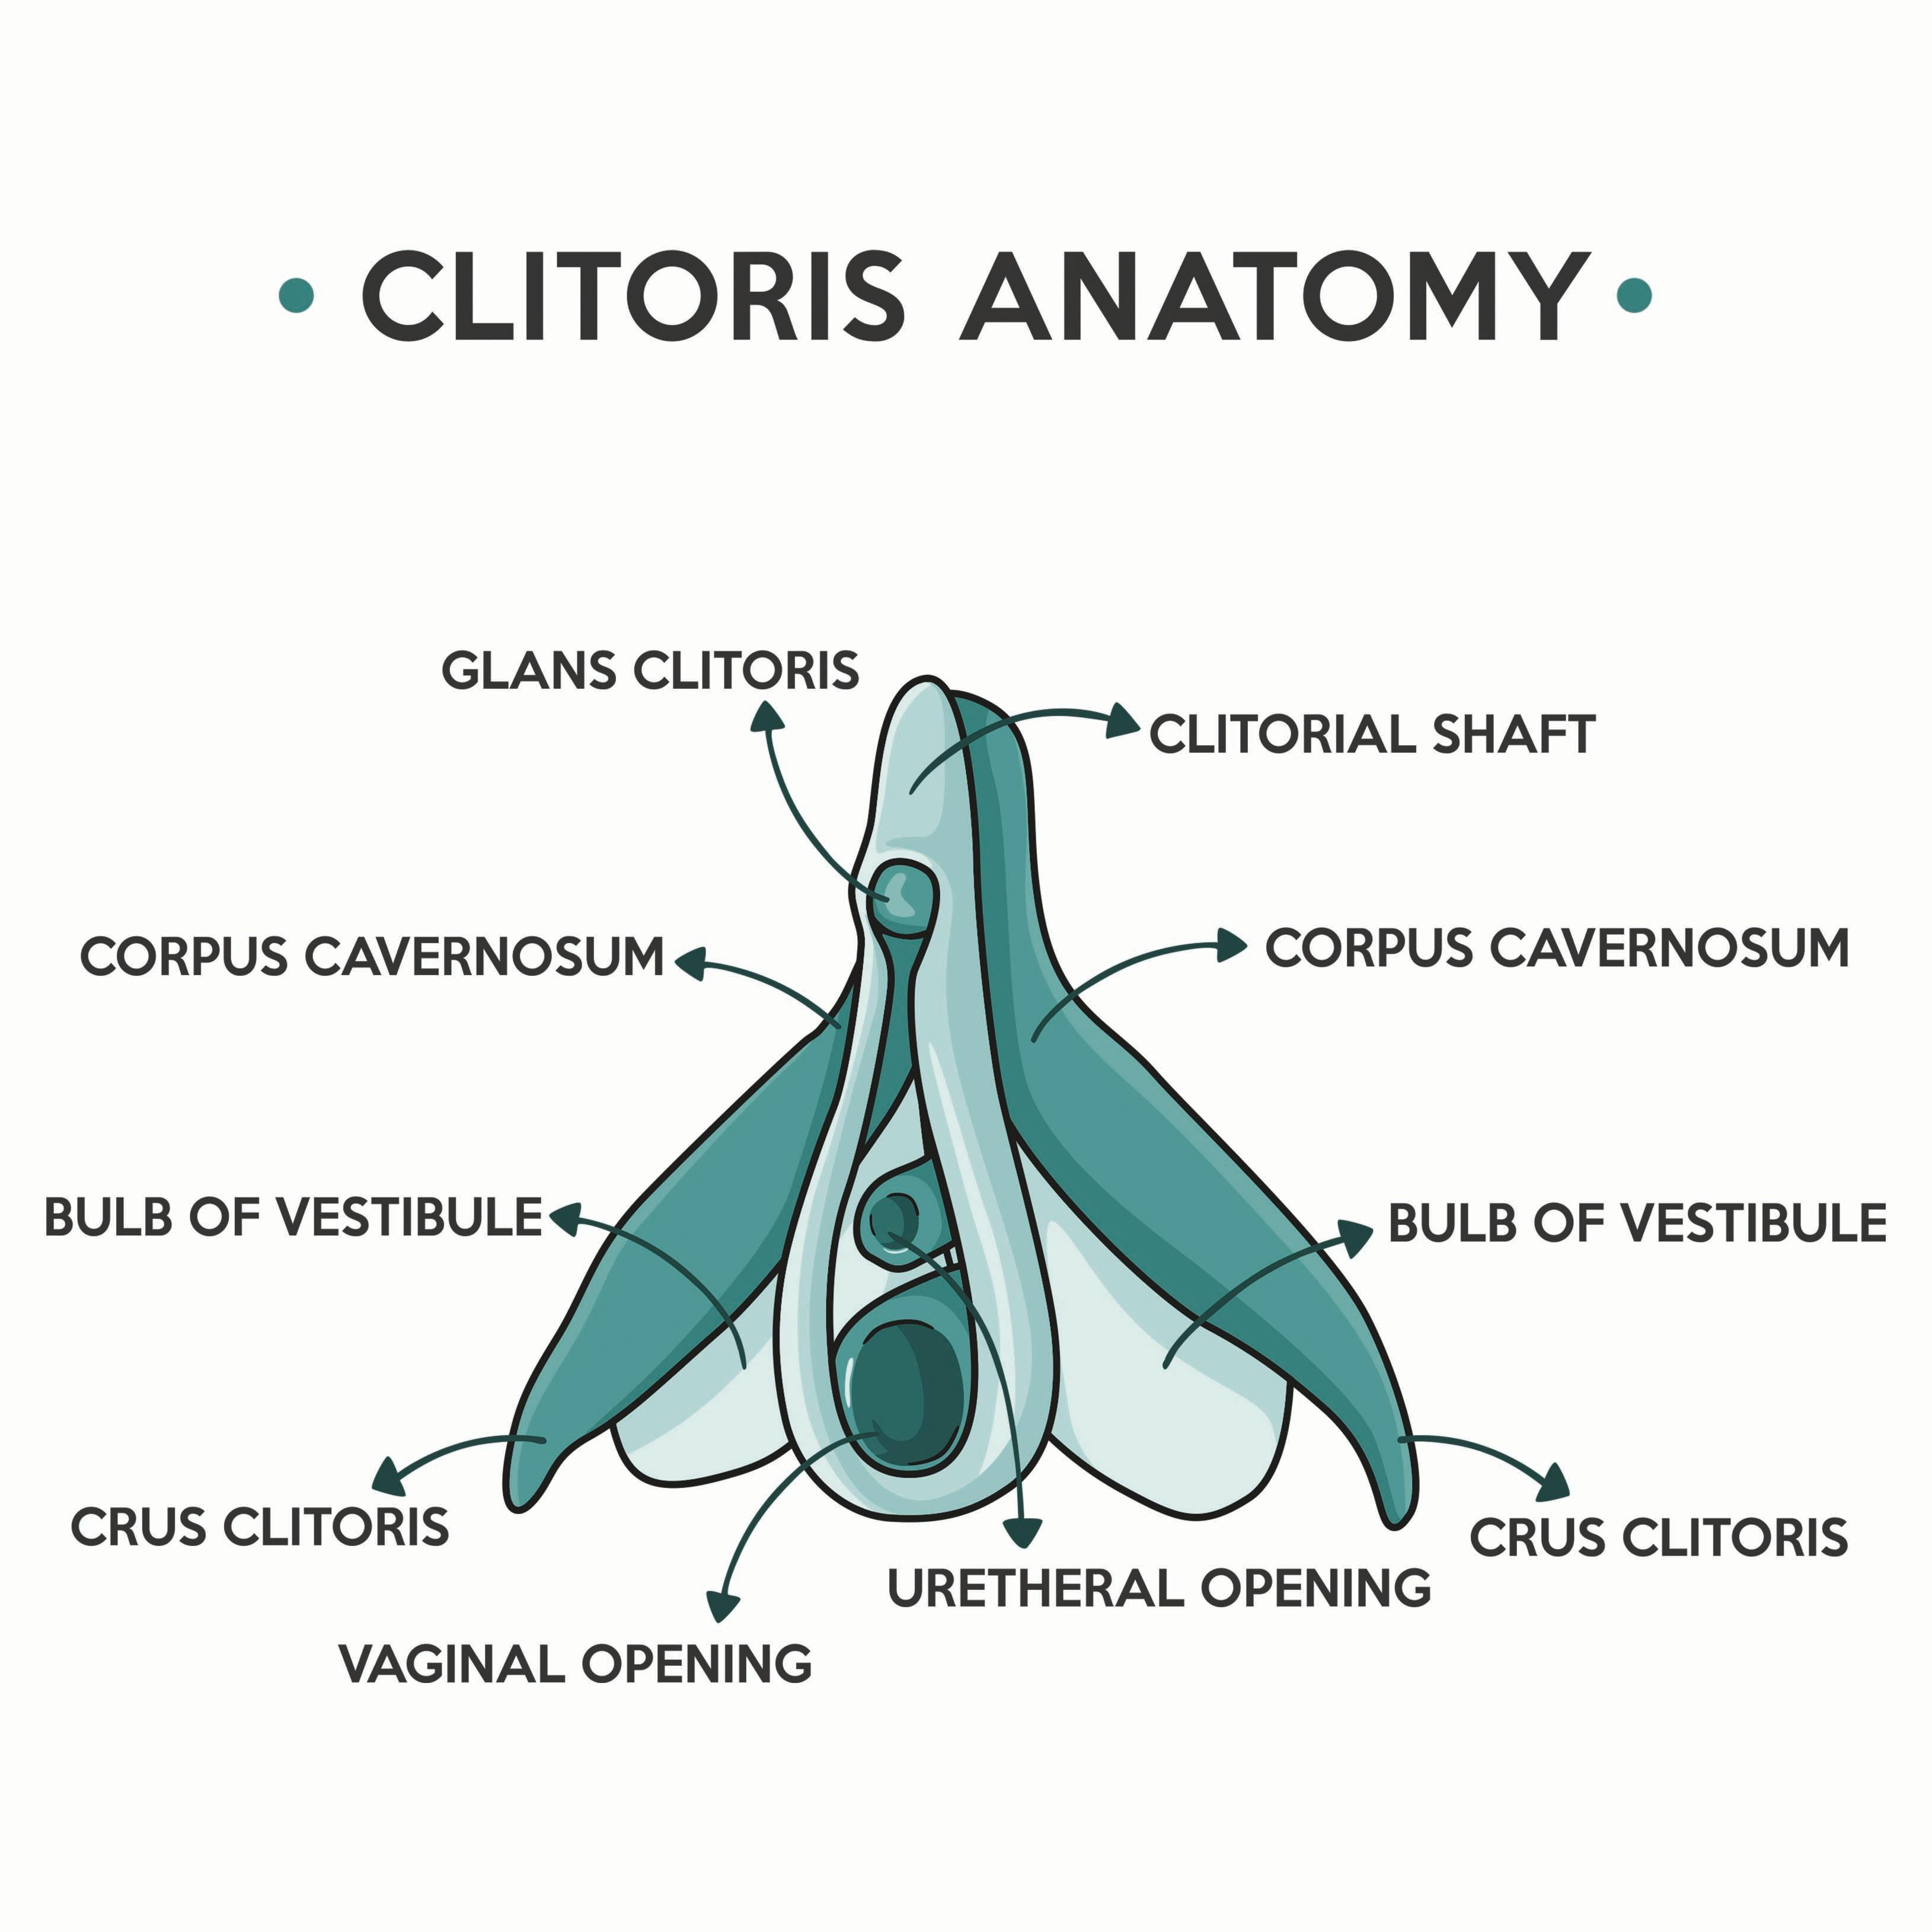 clitoris anatomy 